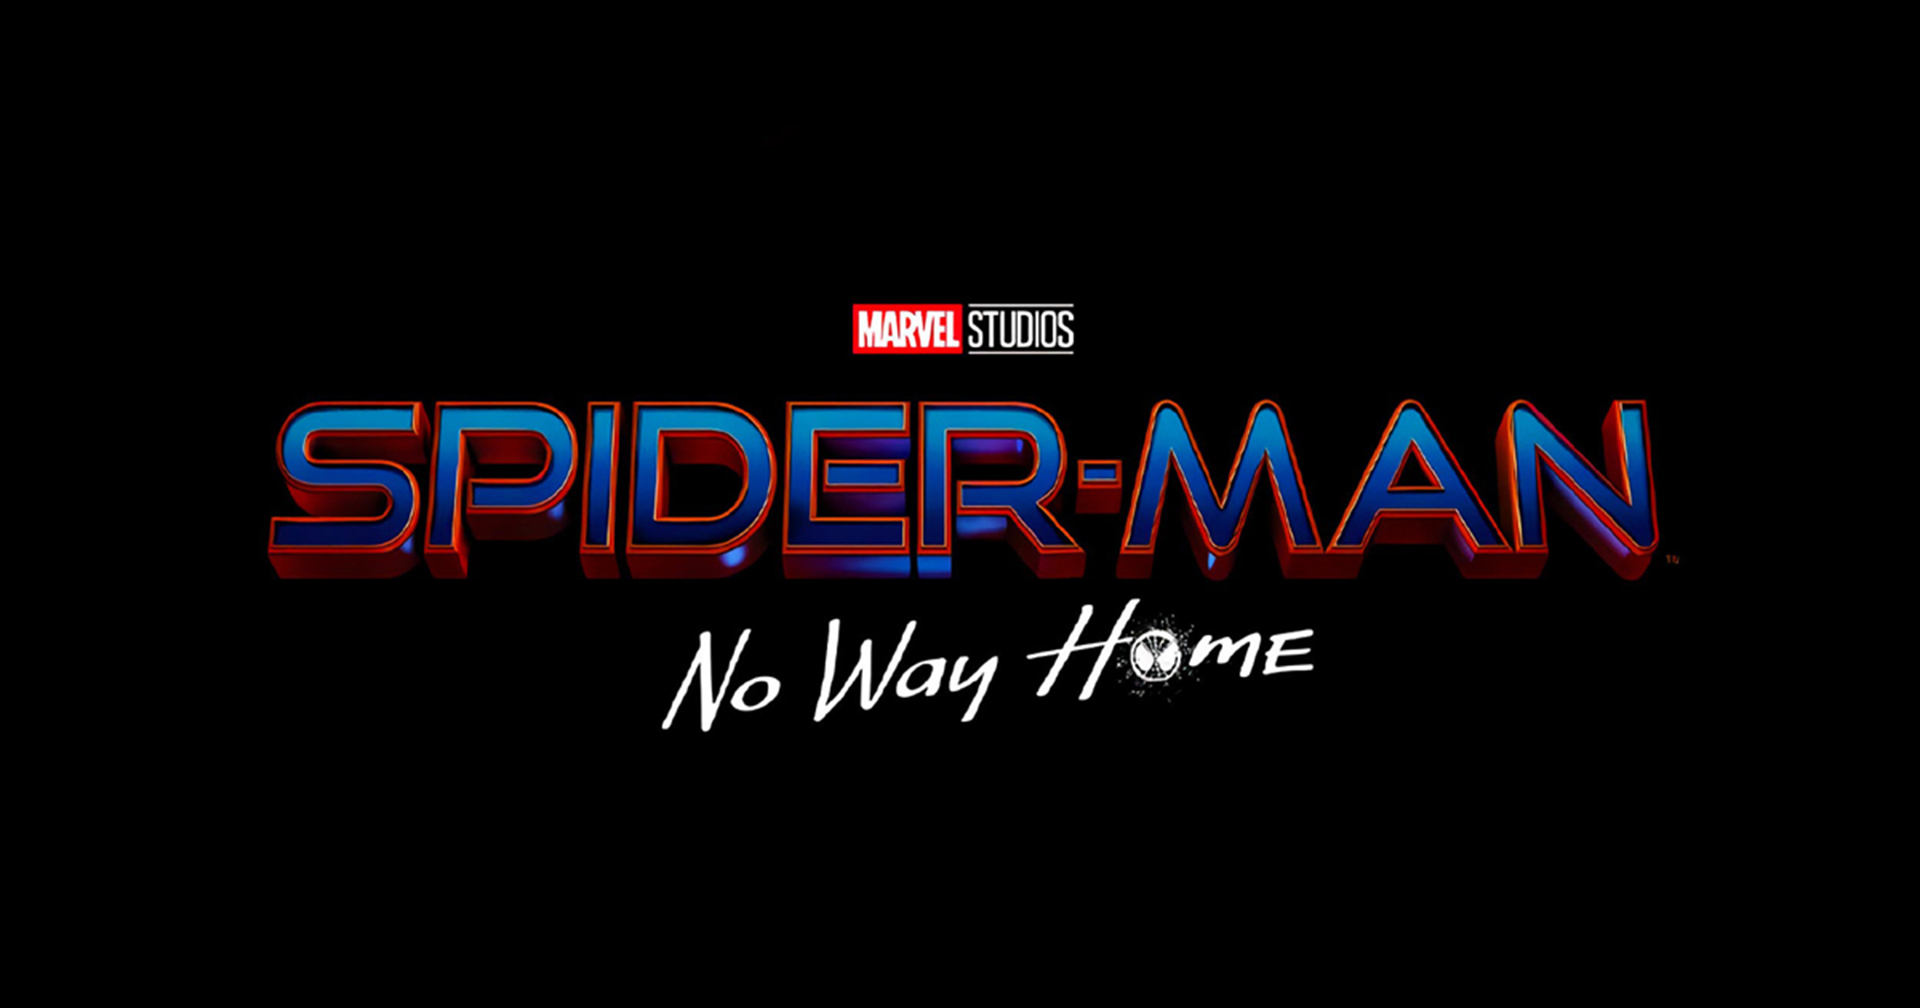 เผยชื่อ Spider-Man ภาคใหม่อย่างเป็นทางการ “No Way Home” : เตรียมเข้าฉาย 17 ธ.ค. นี้